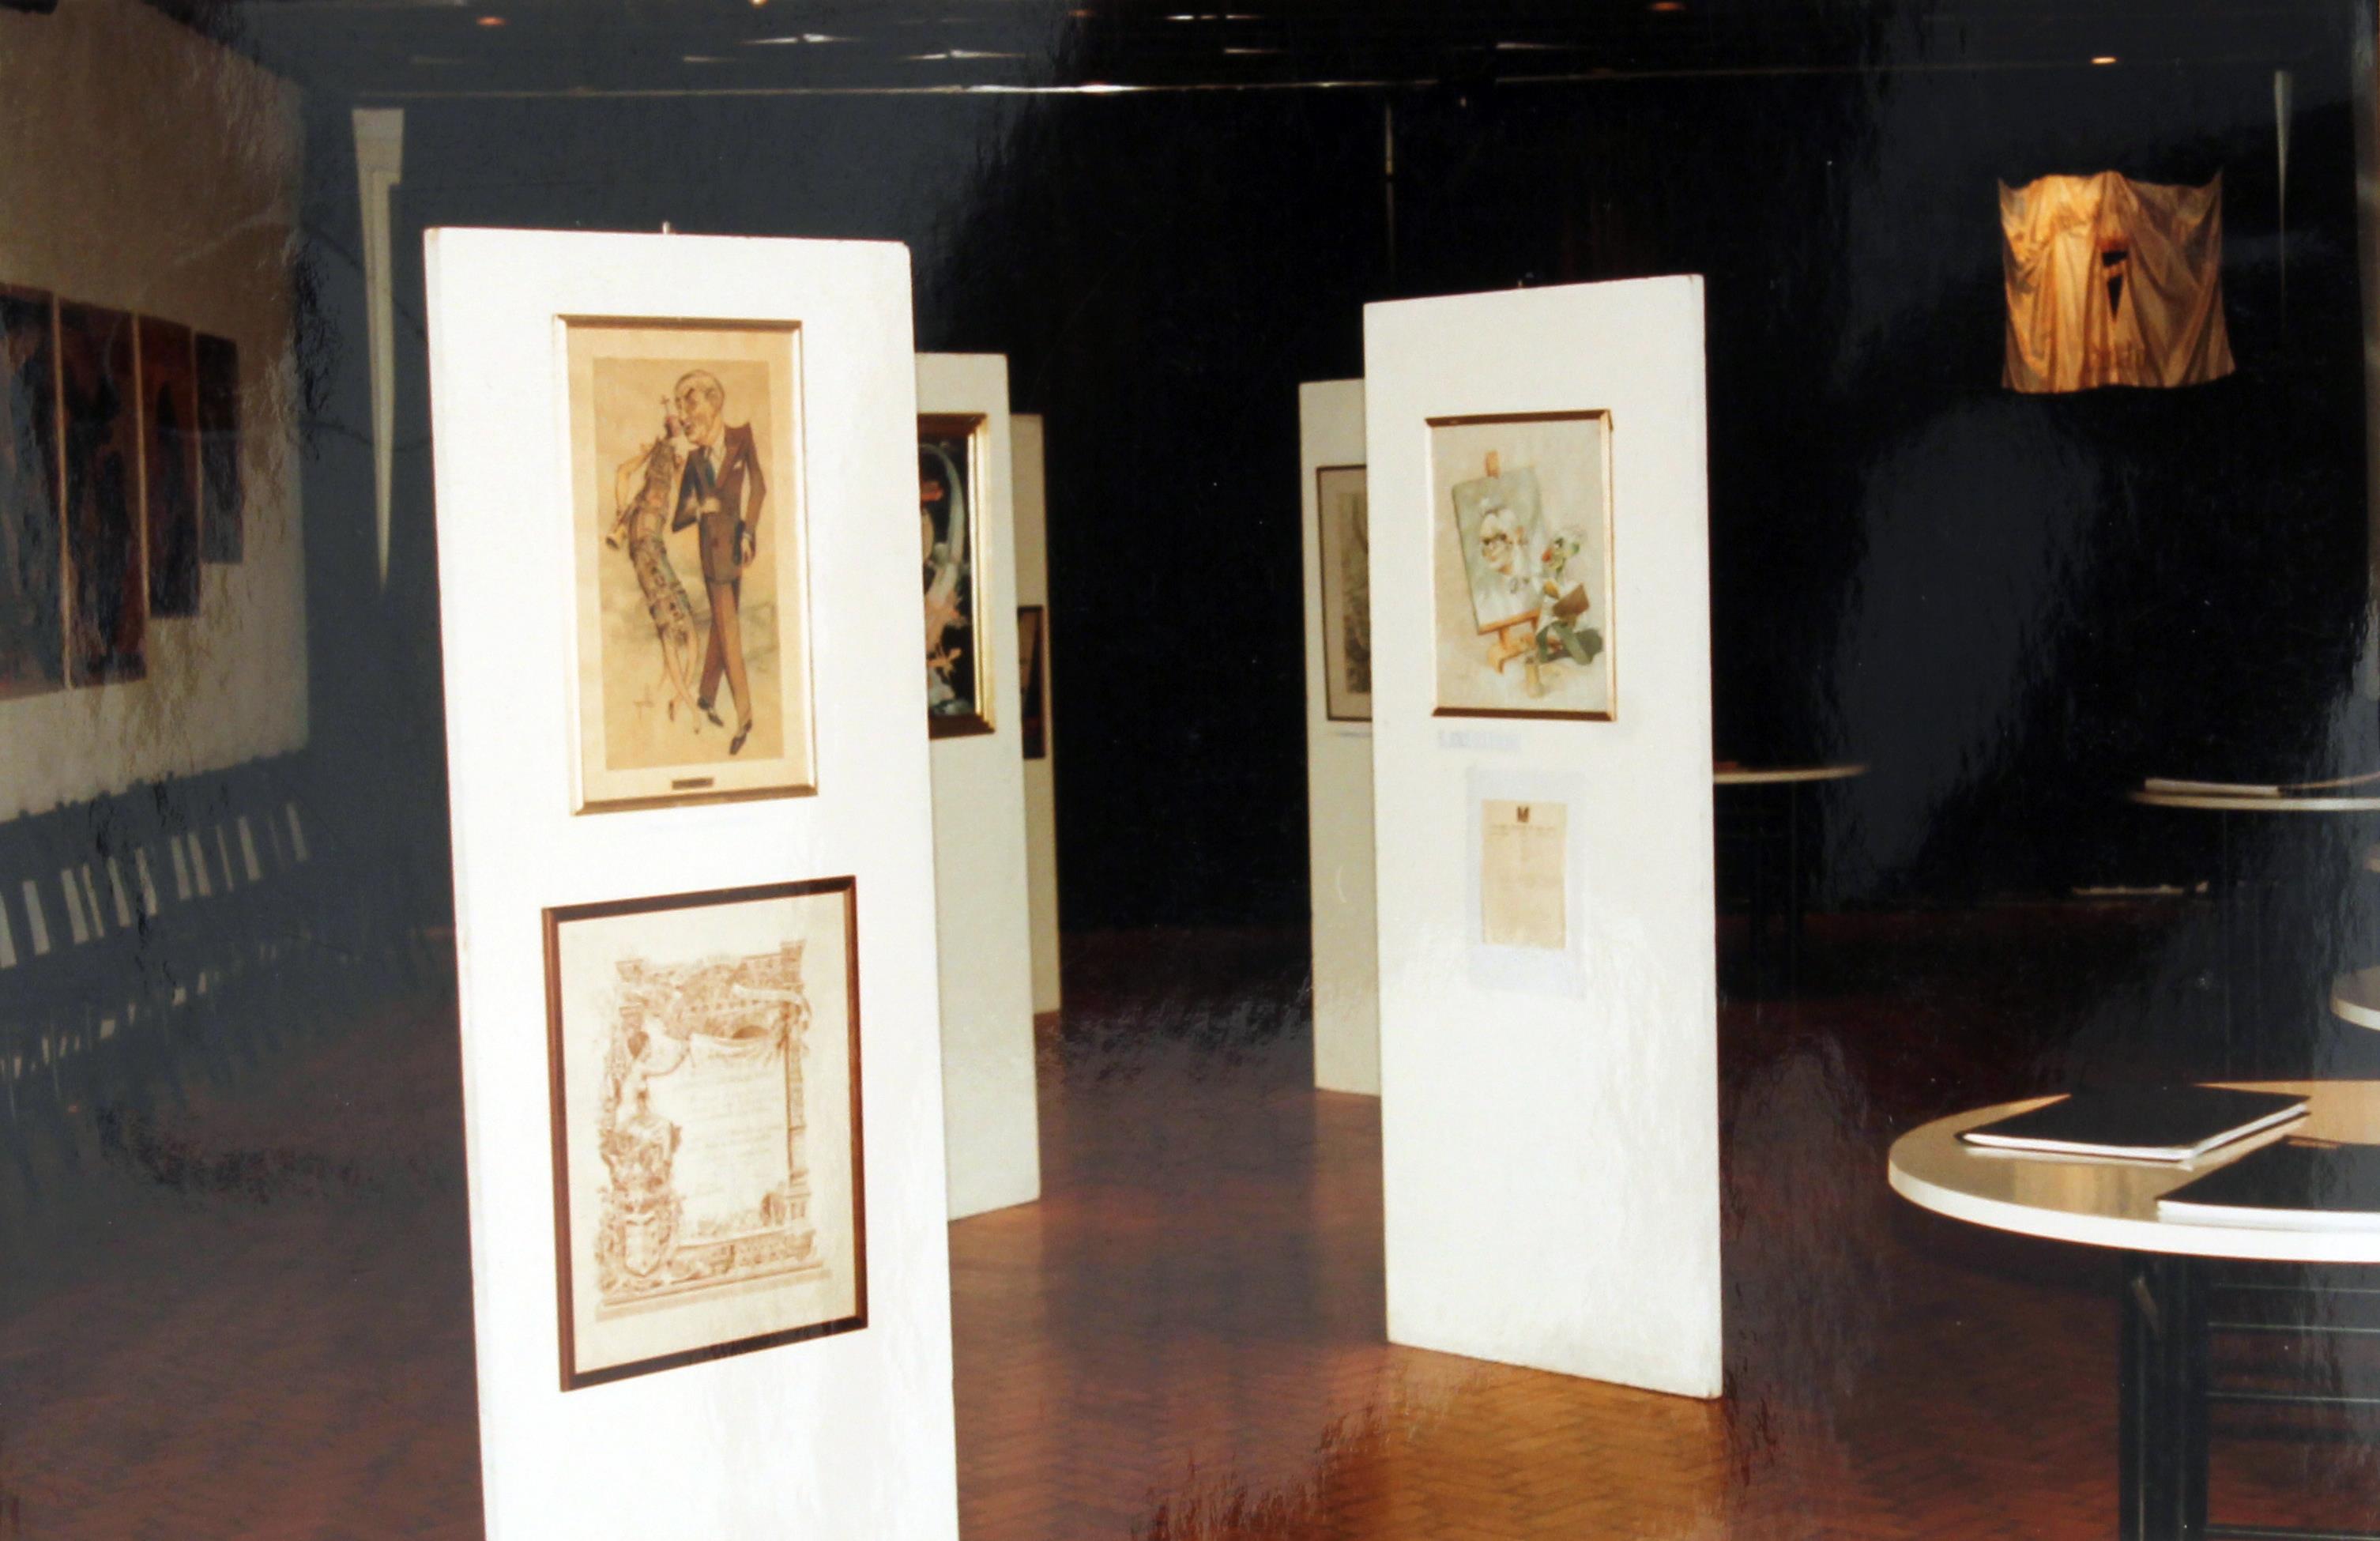 2º Exposição "Documental" póstuma :«Uma obra : Cruz Caldas» : vários aspetos gerais e pormenorizados da exposição